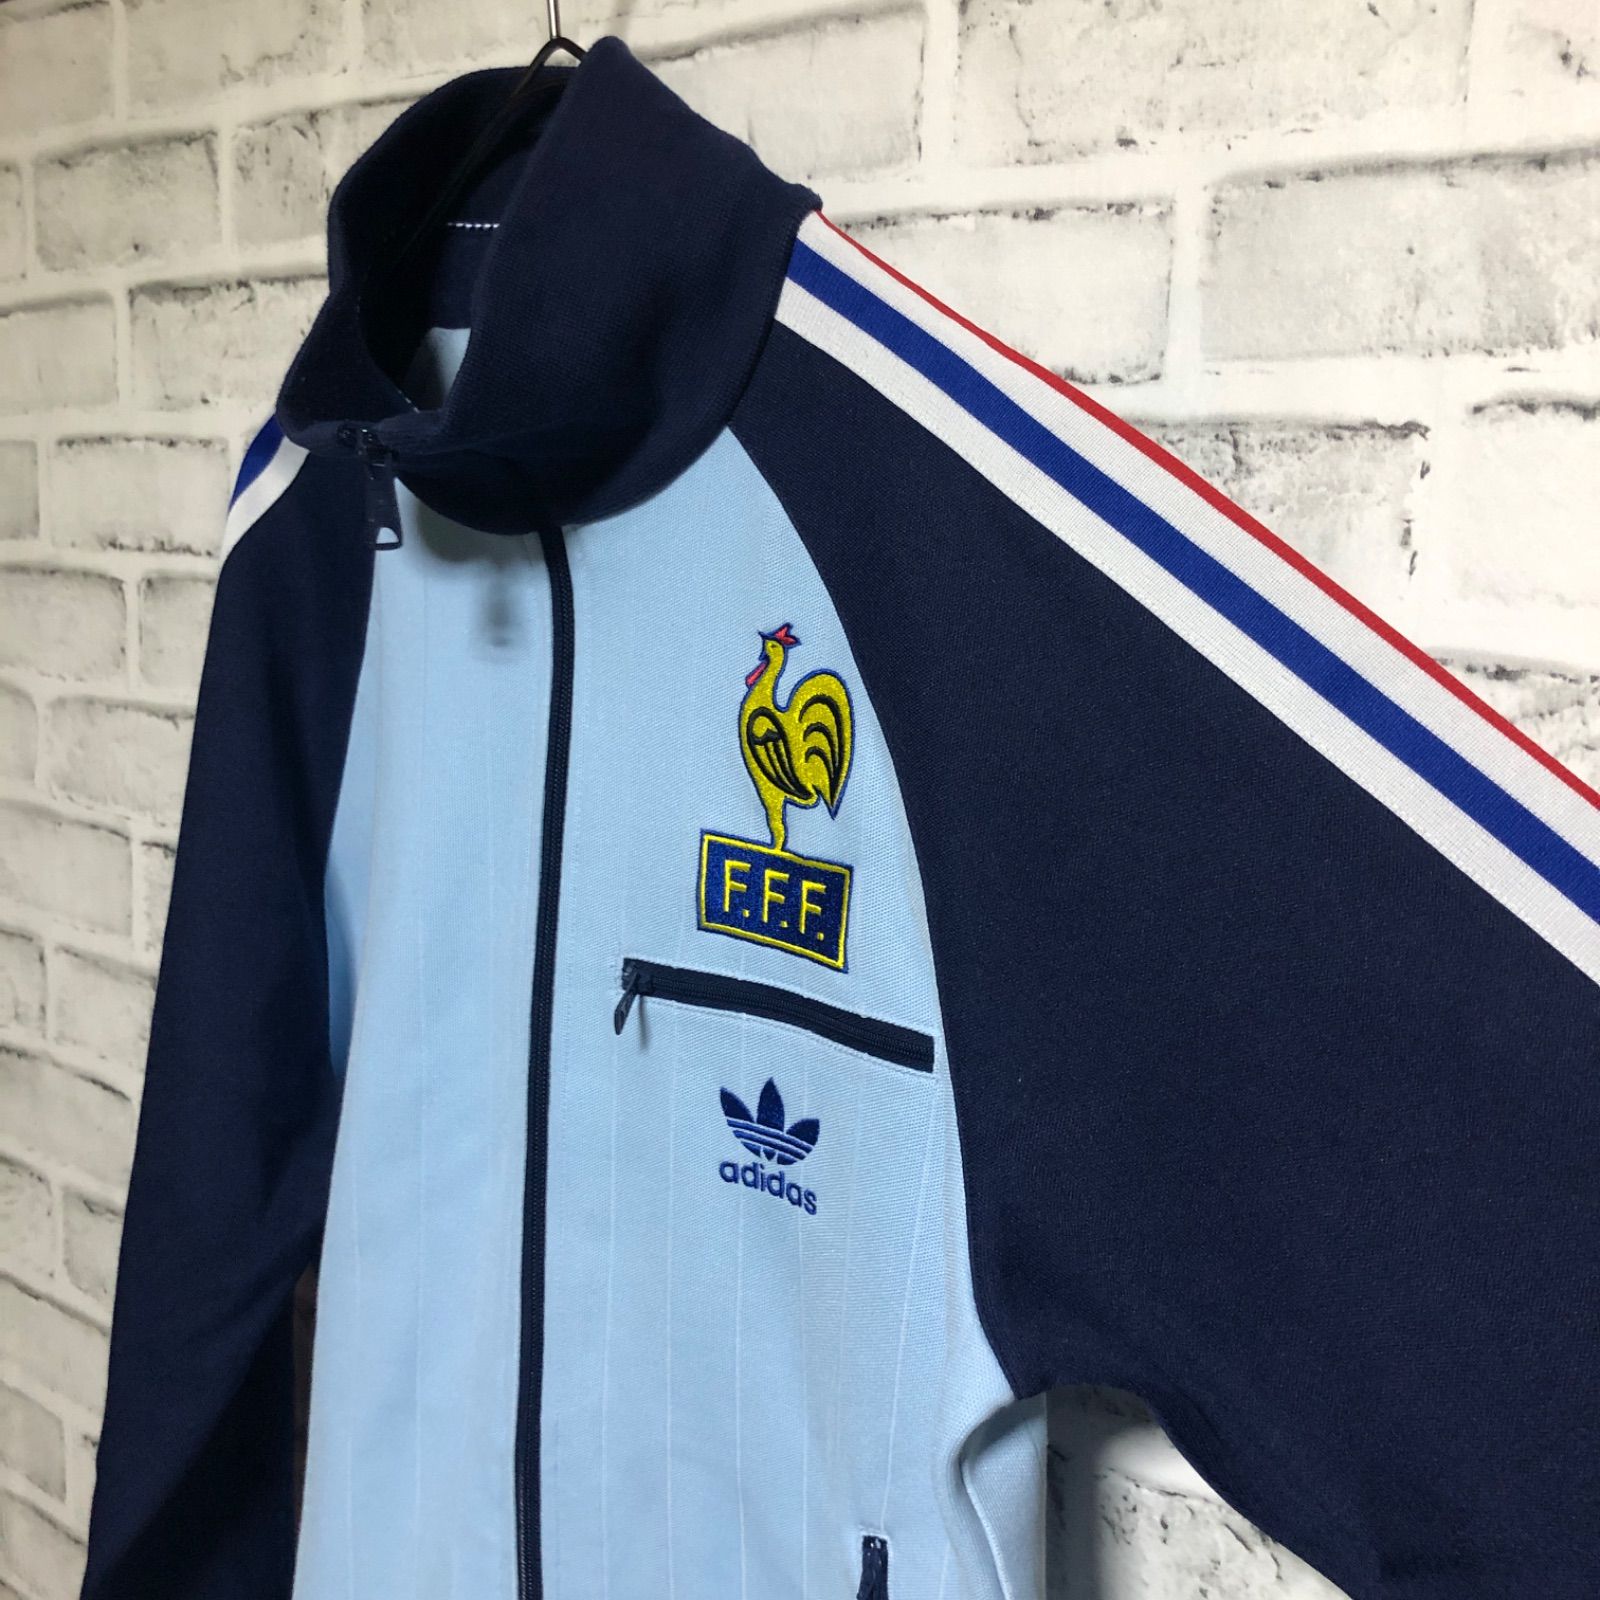 90s⭐️adidas トラックジャケット/ジャージ 刺繍ロゴ 🇫🇷フランス代表 1982W杯記念 vintage トリコロール